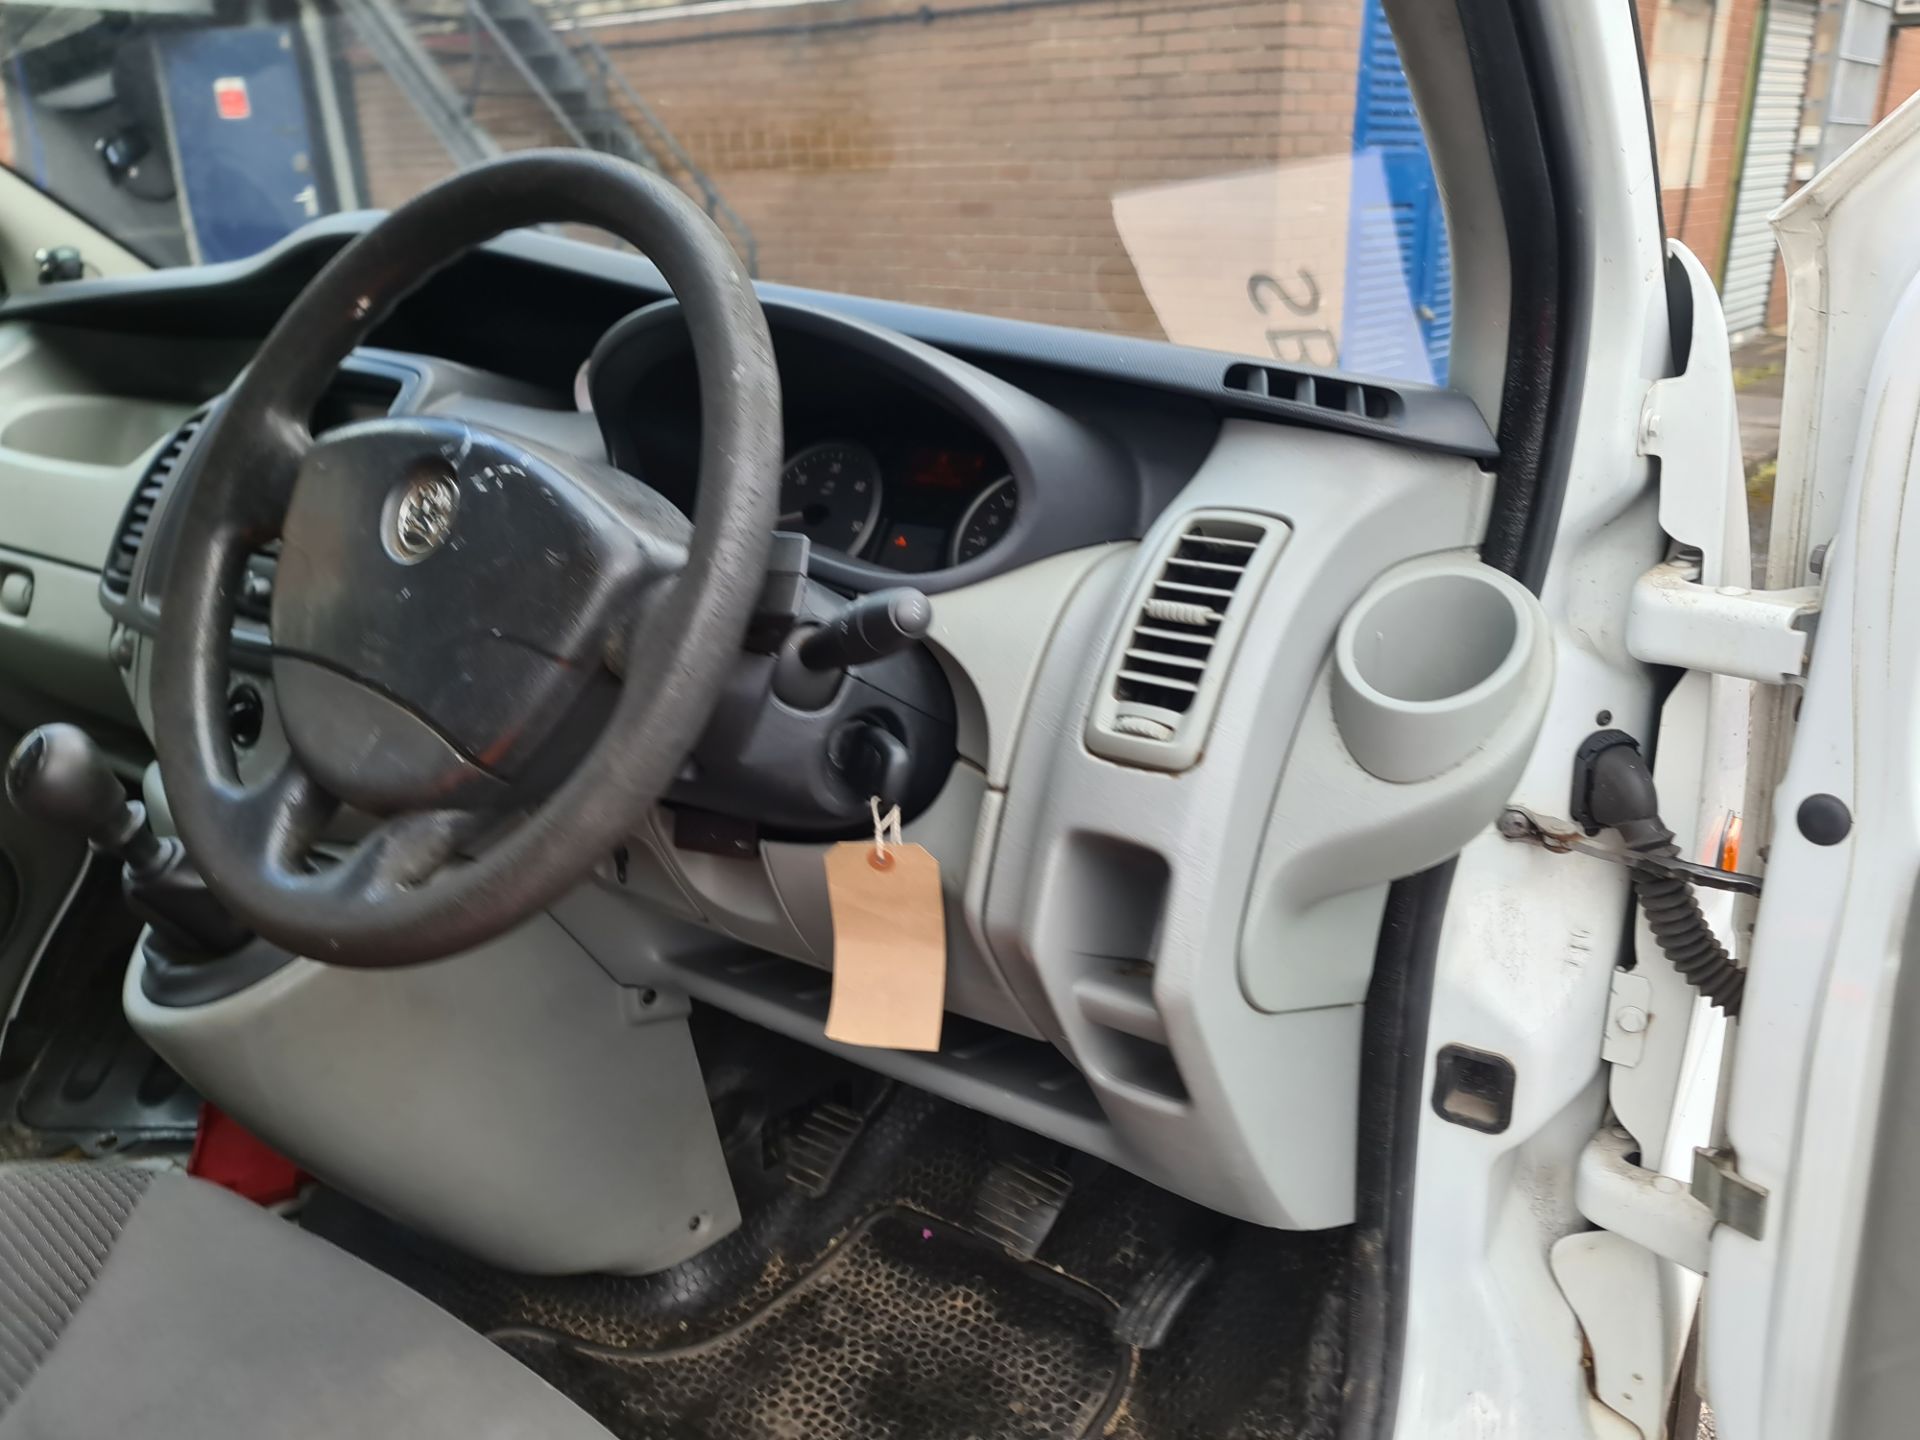 2012 Vauxhall Vivaro 2900 CDTi LWB panel van - Image 15 of 97